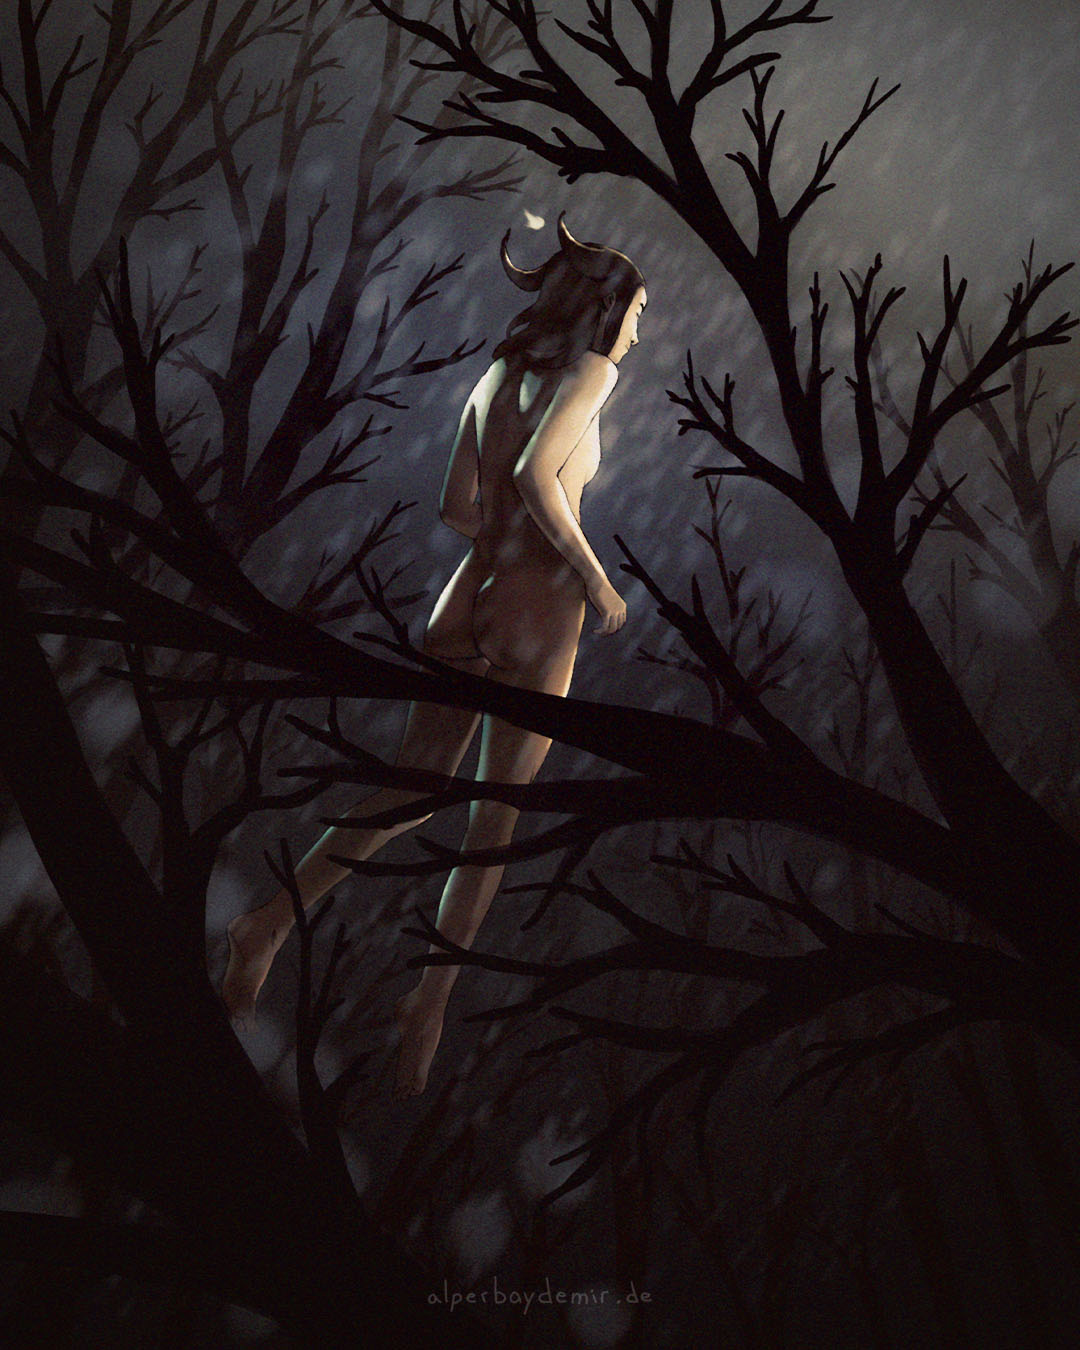 Illustration einer Hexe, die ruhig durch einen Wald schwebt, umgeben von Ästen bei Nacht und im Regen.